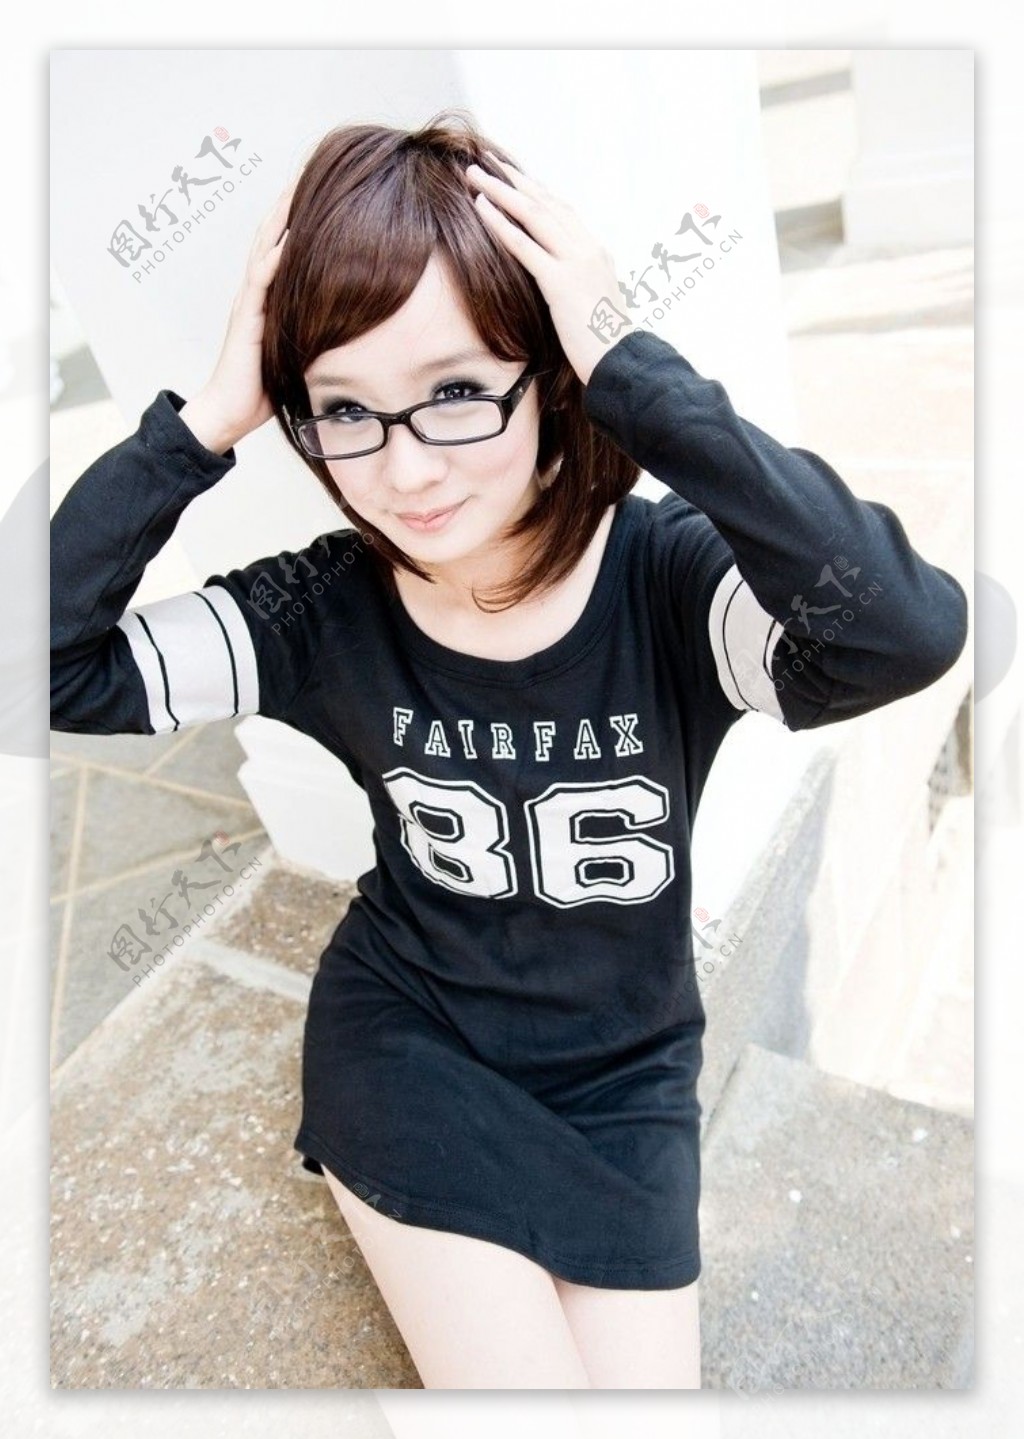 韩系运动型清秀漂亮美女小姐姐MIU性感完美身材运动风格写真自拍照片 - 优美图库